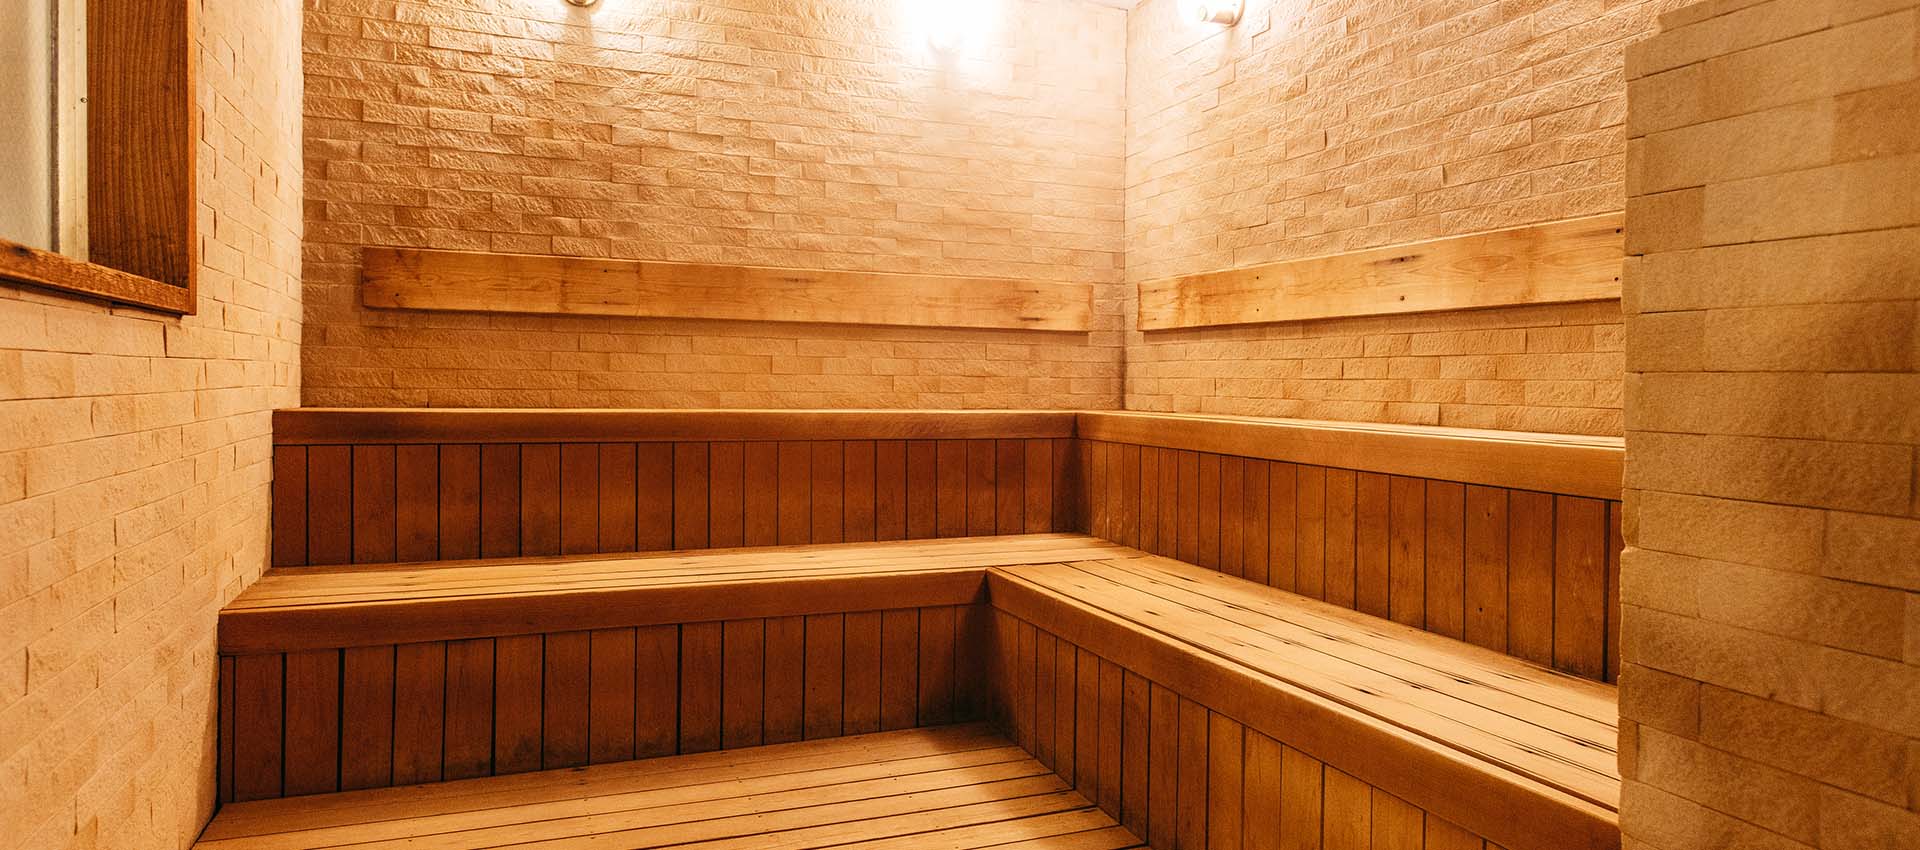 享受桑拿浴室和室外空氣浴的“Totonou”體驗。